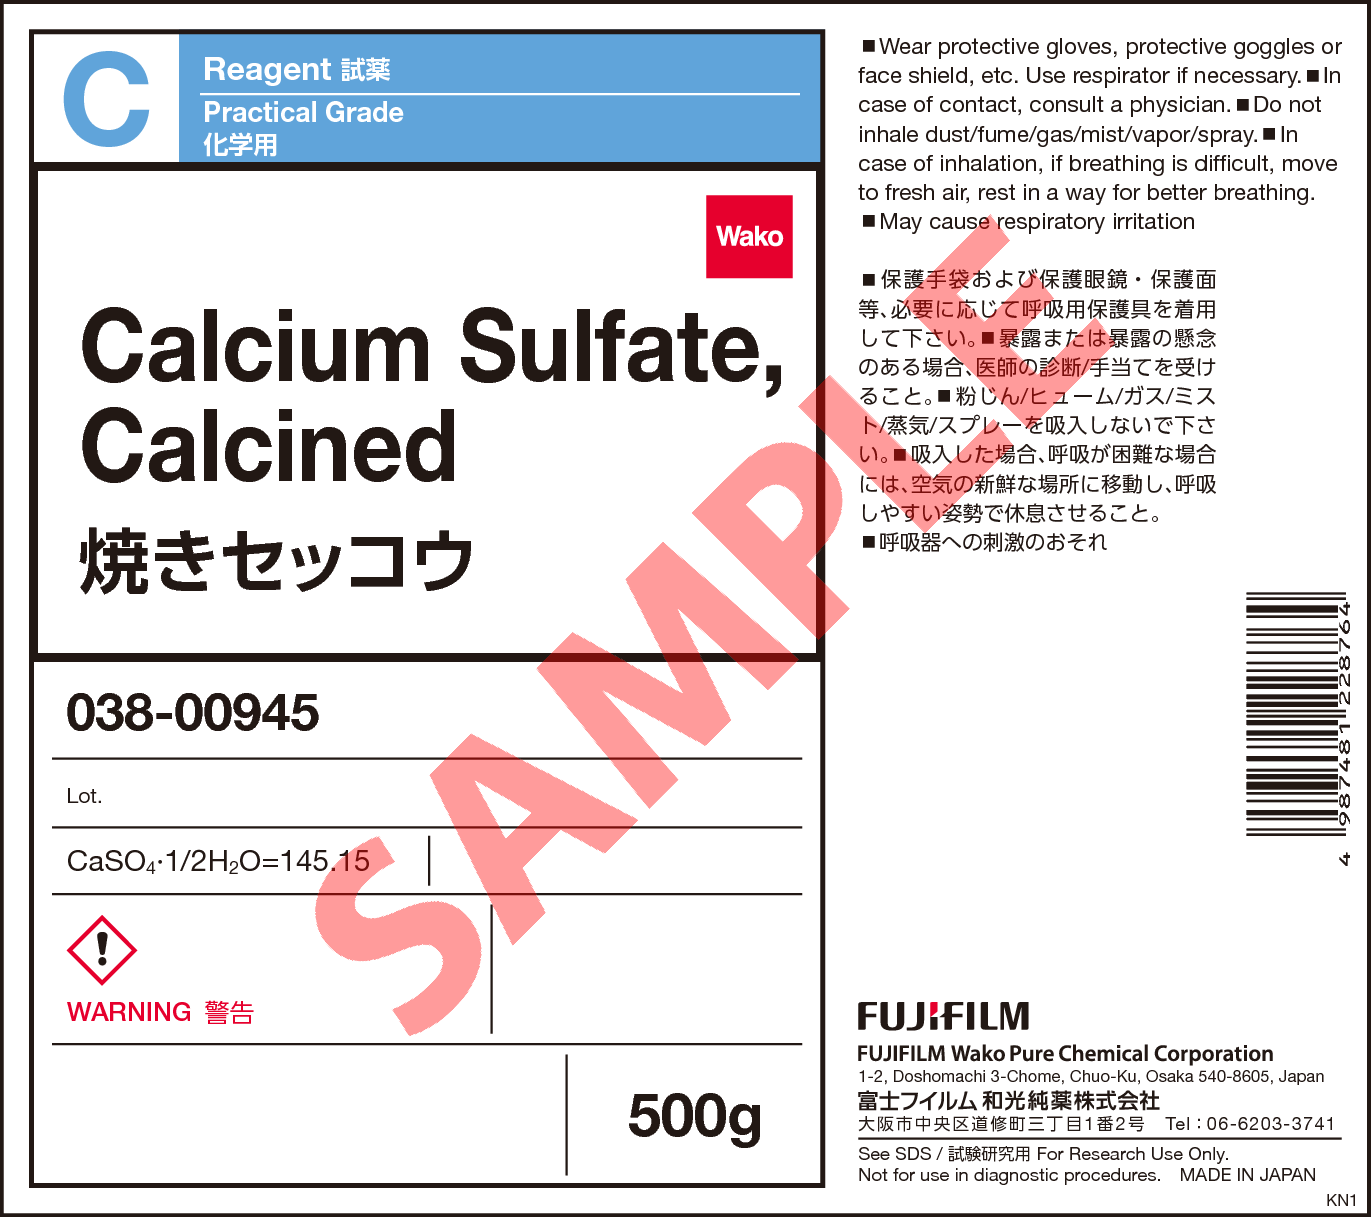 10034-76-1・焼きセッコウ・Calcium Sulfate, Calcined・038-00945 